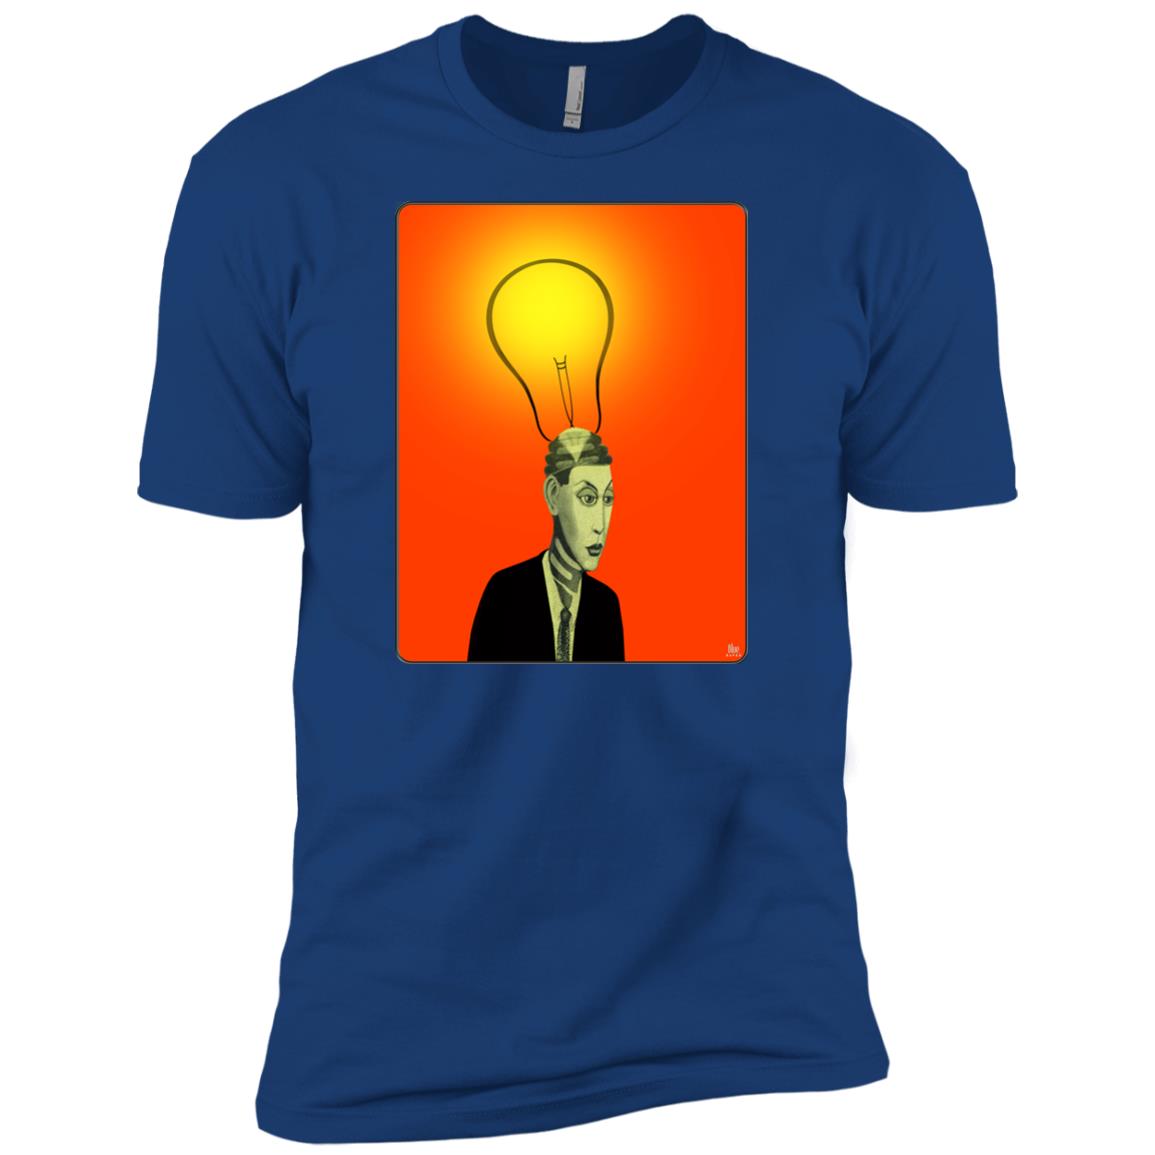 BRIGHT IDEA - Men's Premium Fitted T-Shirt